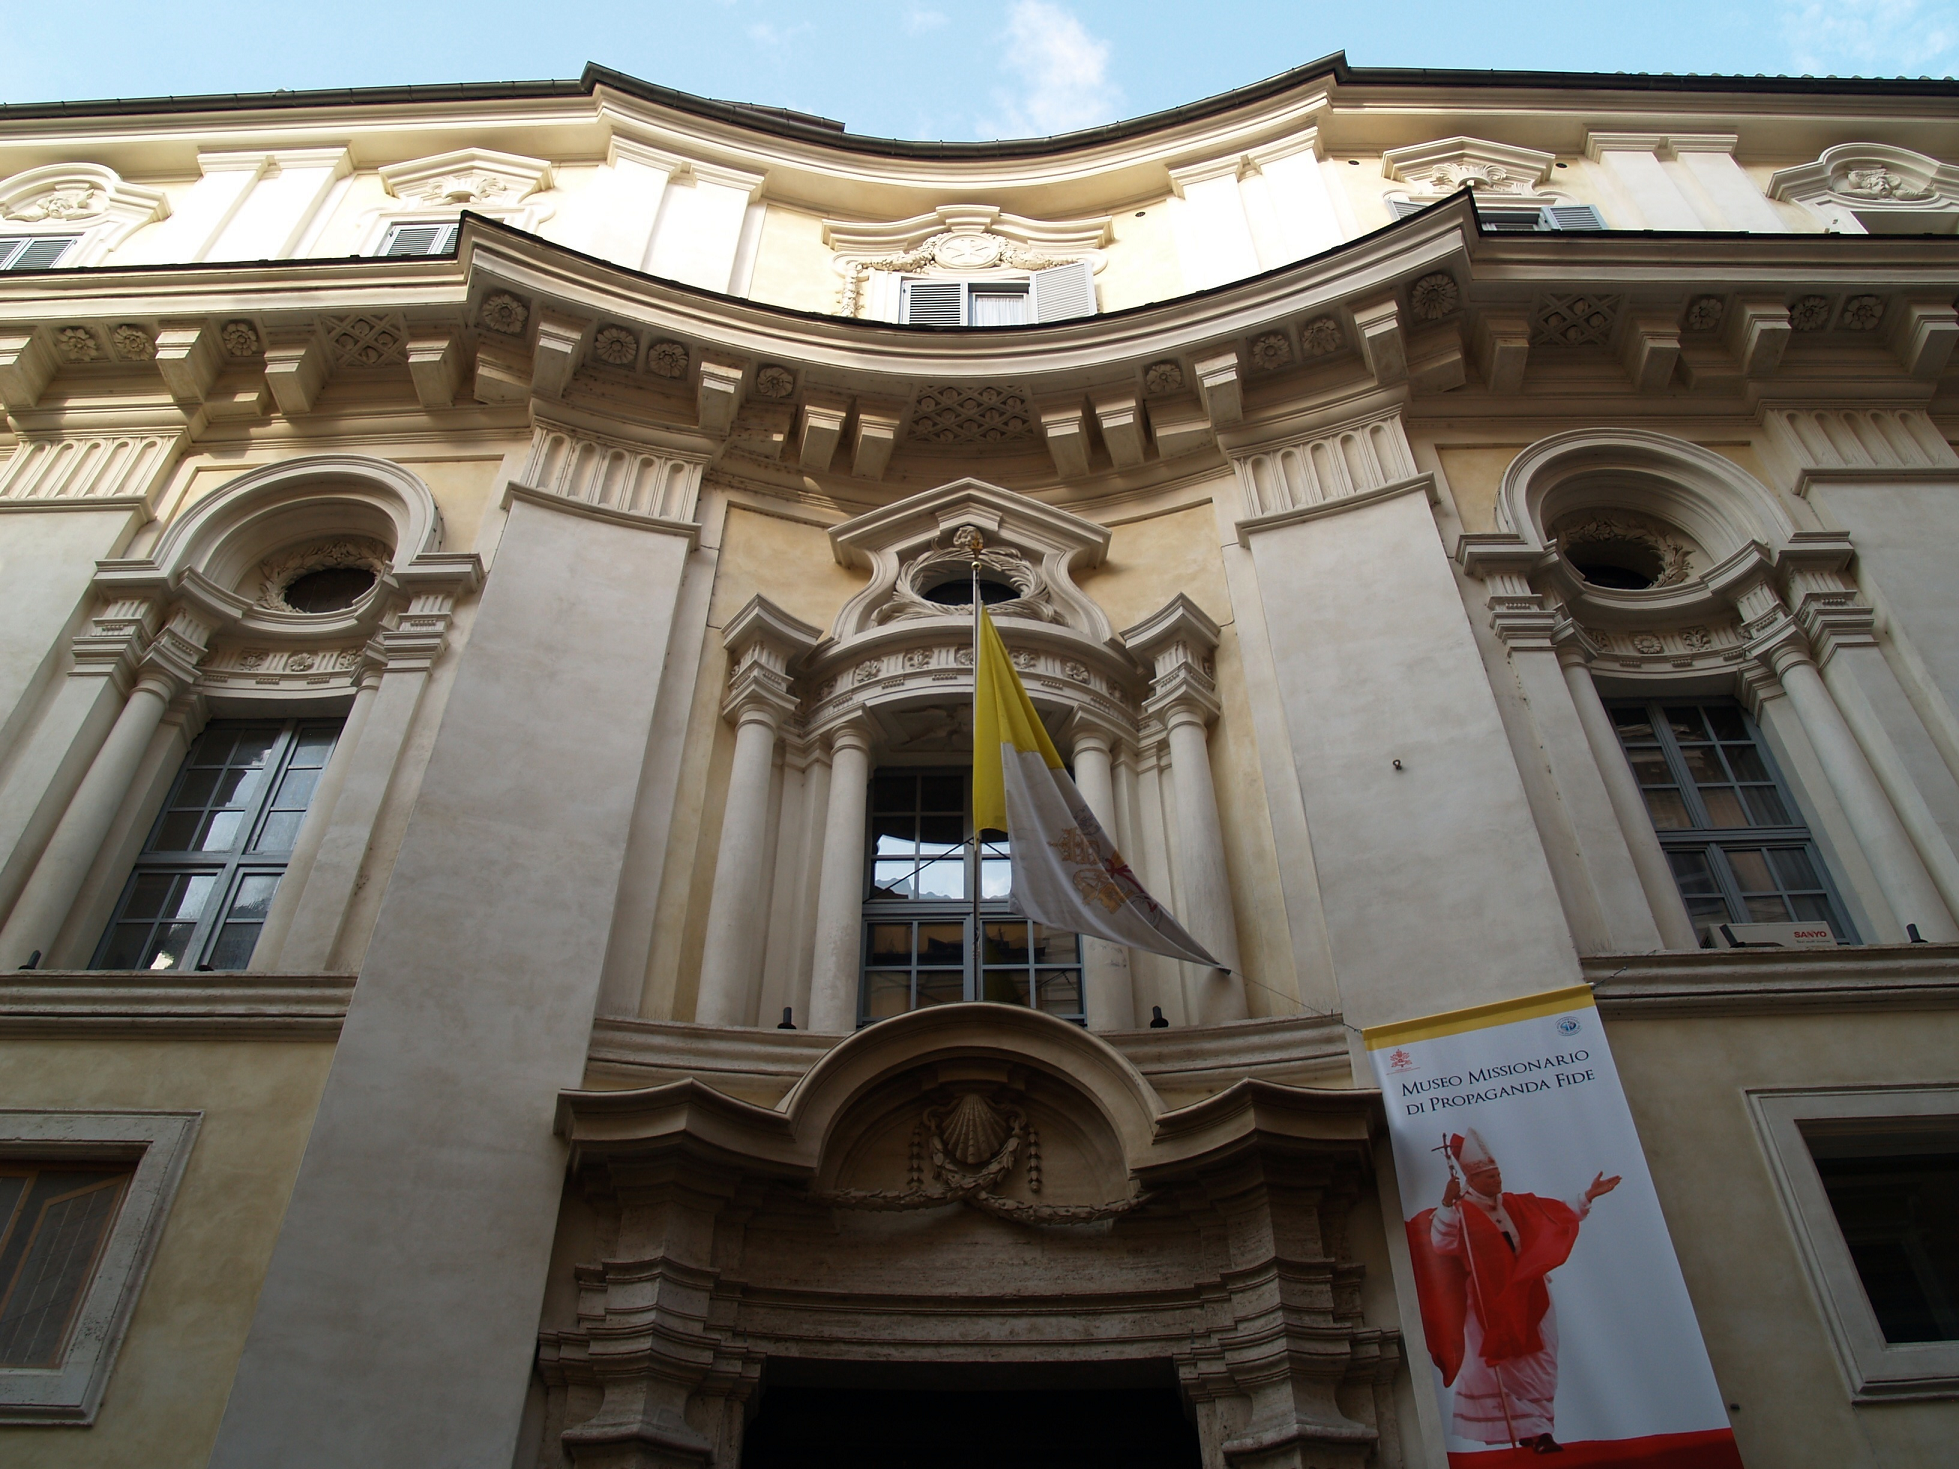 Palace of Propaganda Fide - Francesco Borromini